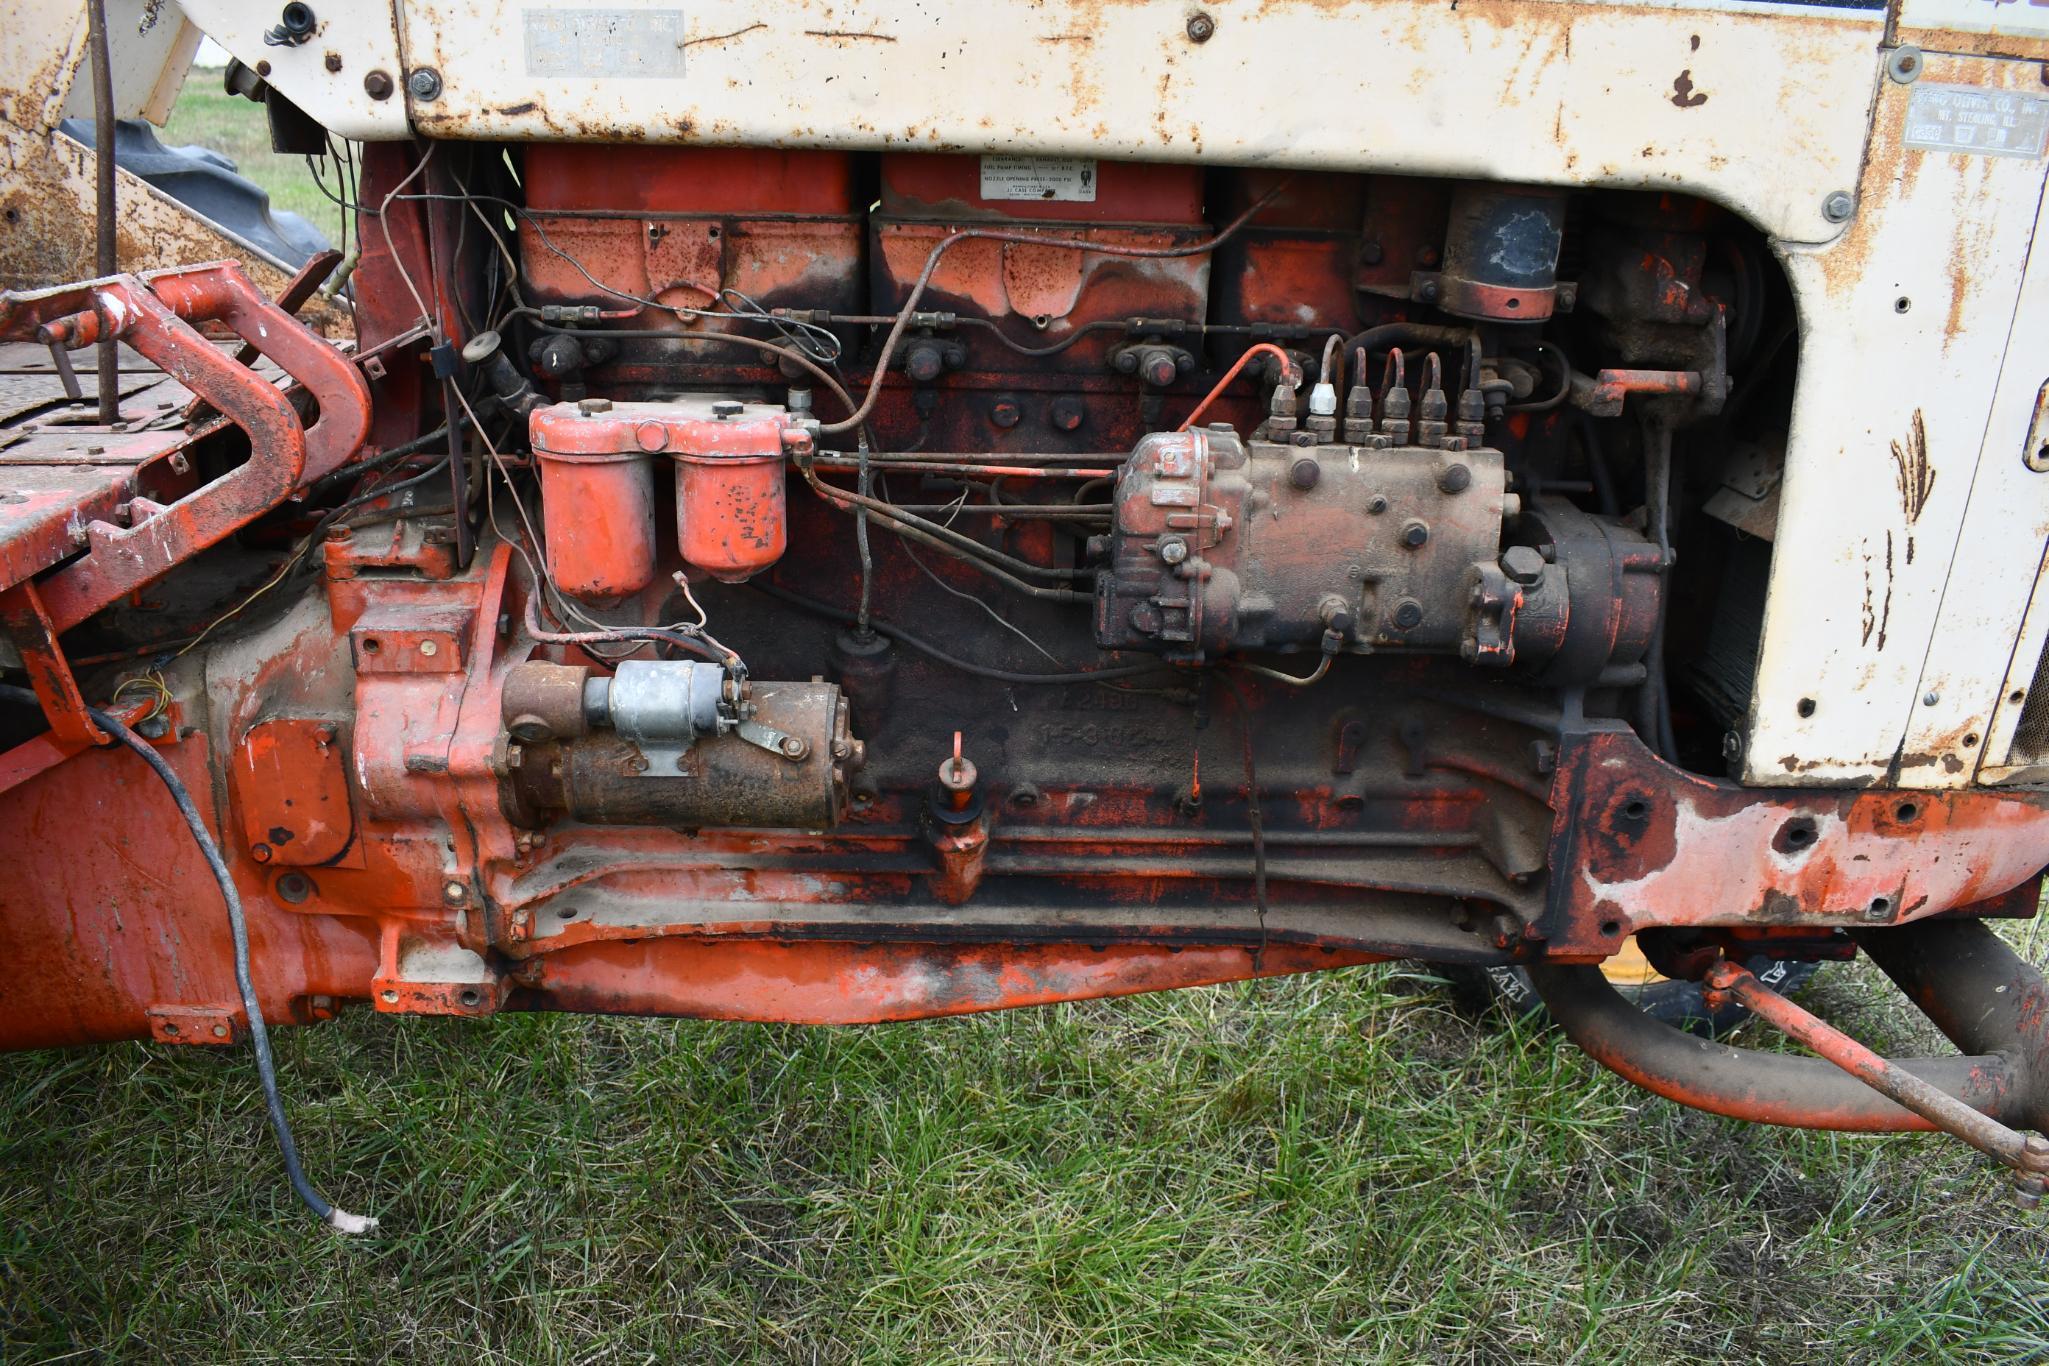 Case 930 Comfort King diesel tractor